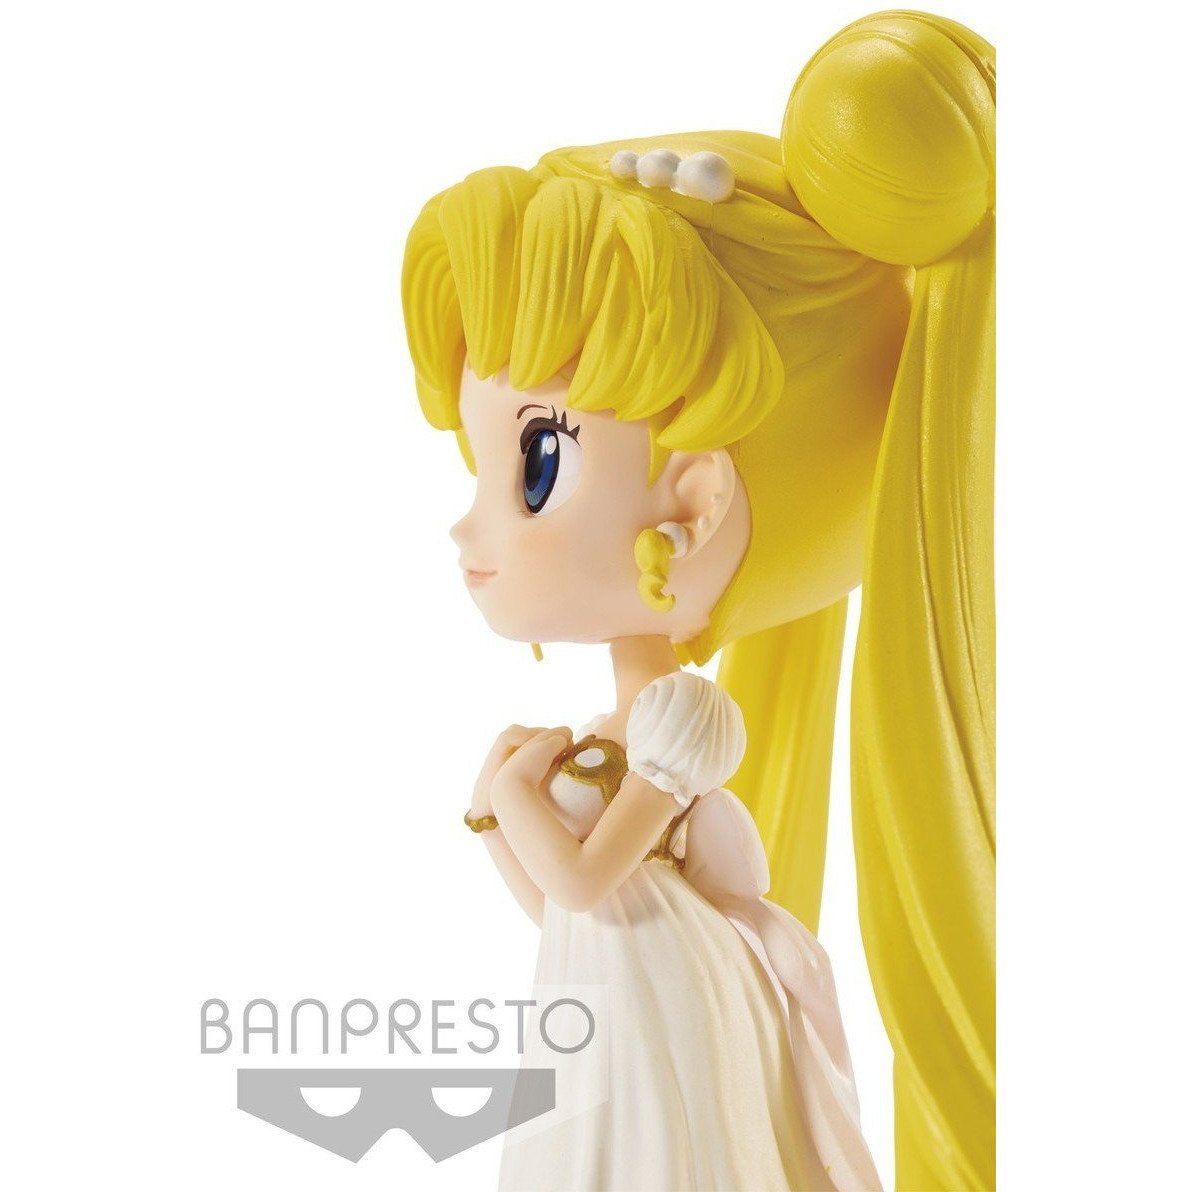 Sailor Moon Q Posket "Princess Serenity"-Bandai-Ace Cards & Collectibles